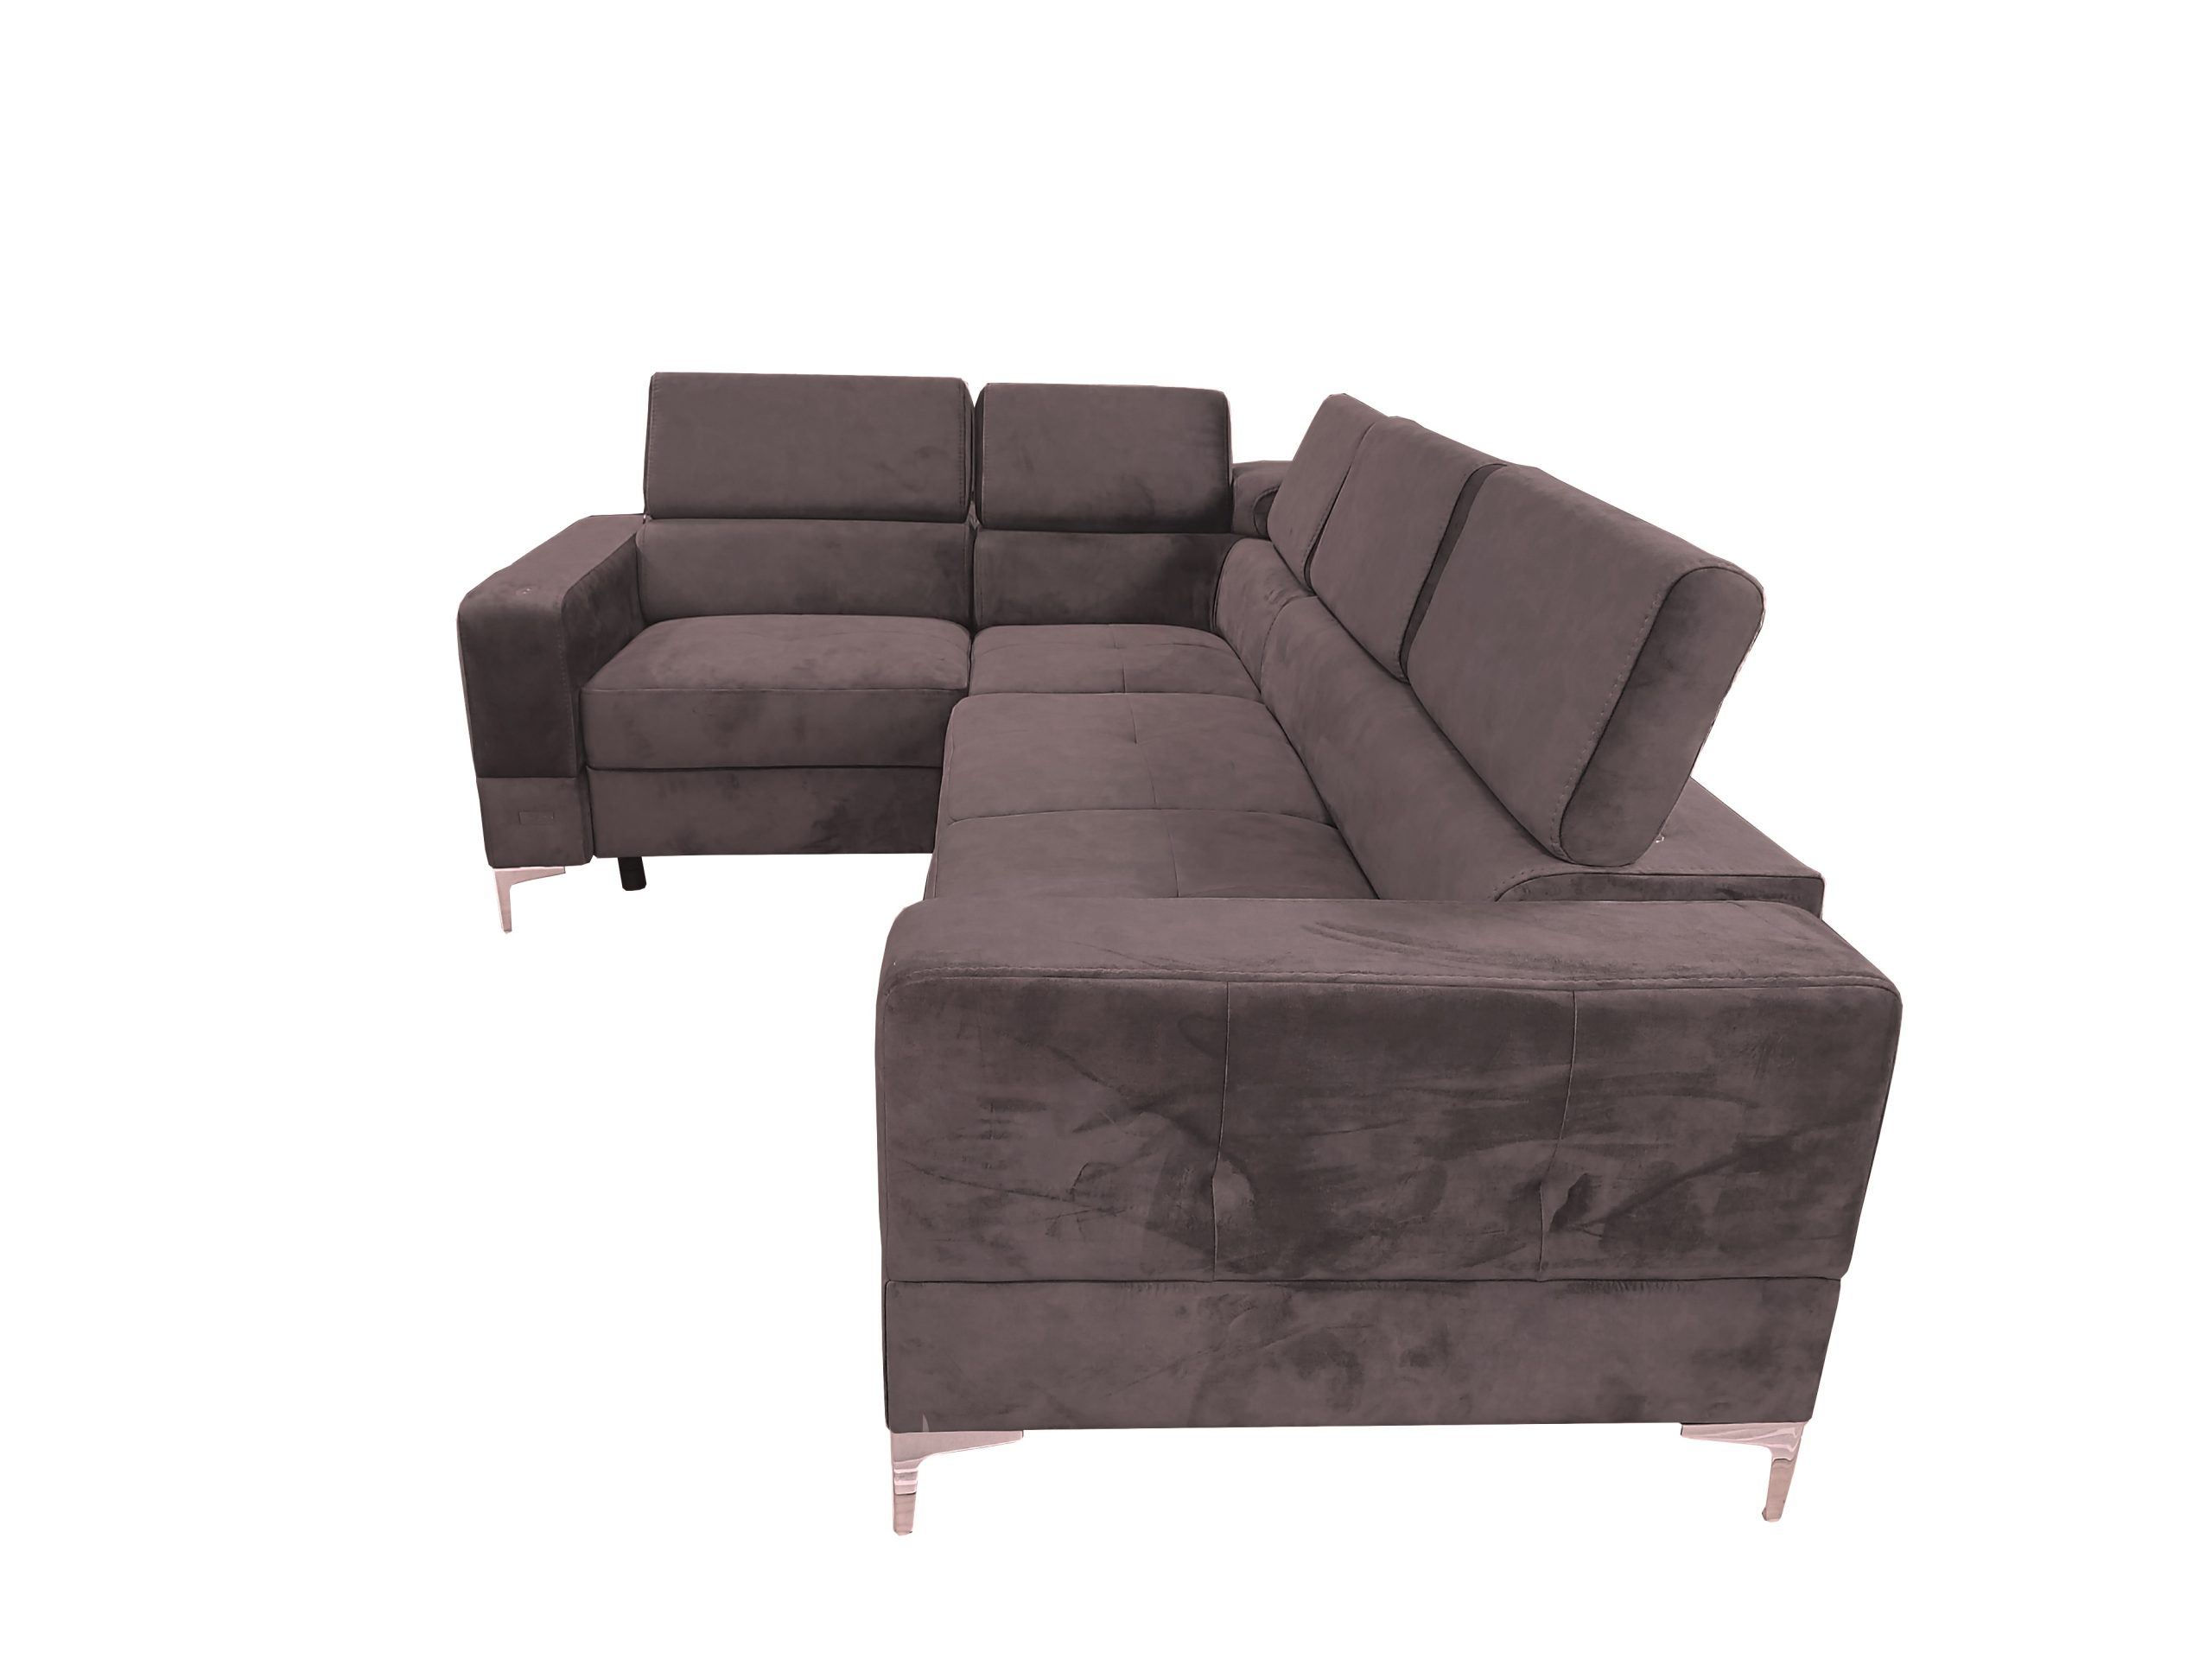 Stūra dīvāns ar relaksācijas funkciju "TOSCANIA RELAX" Kreis.